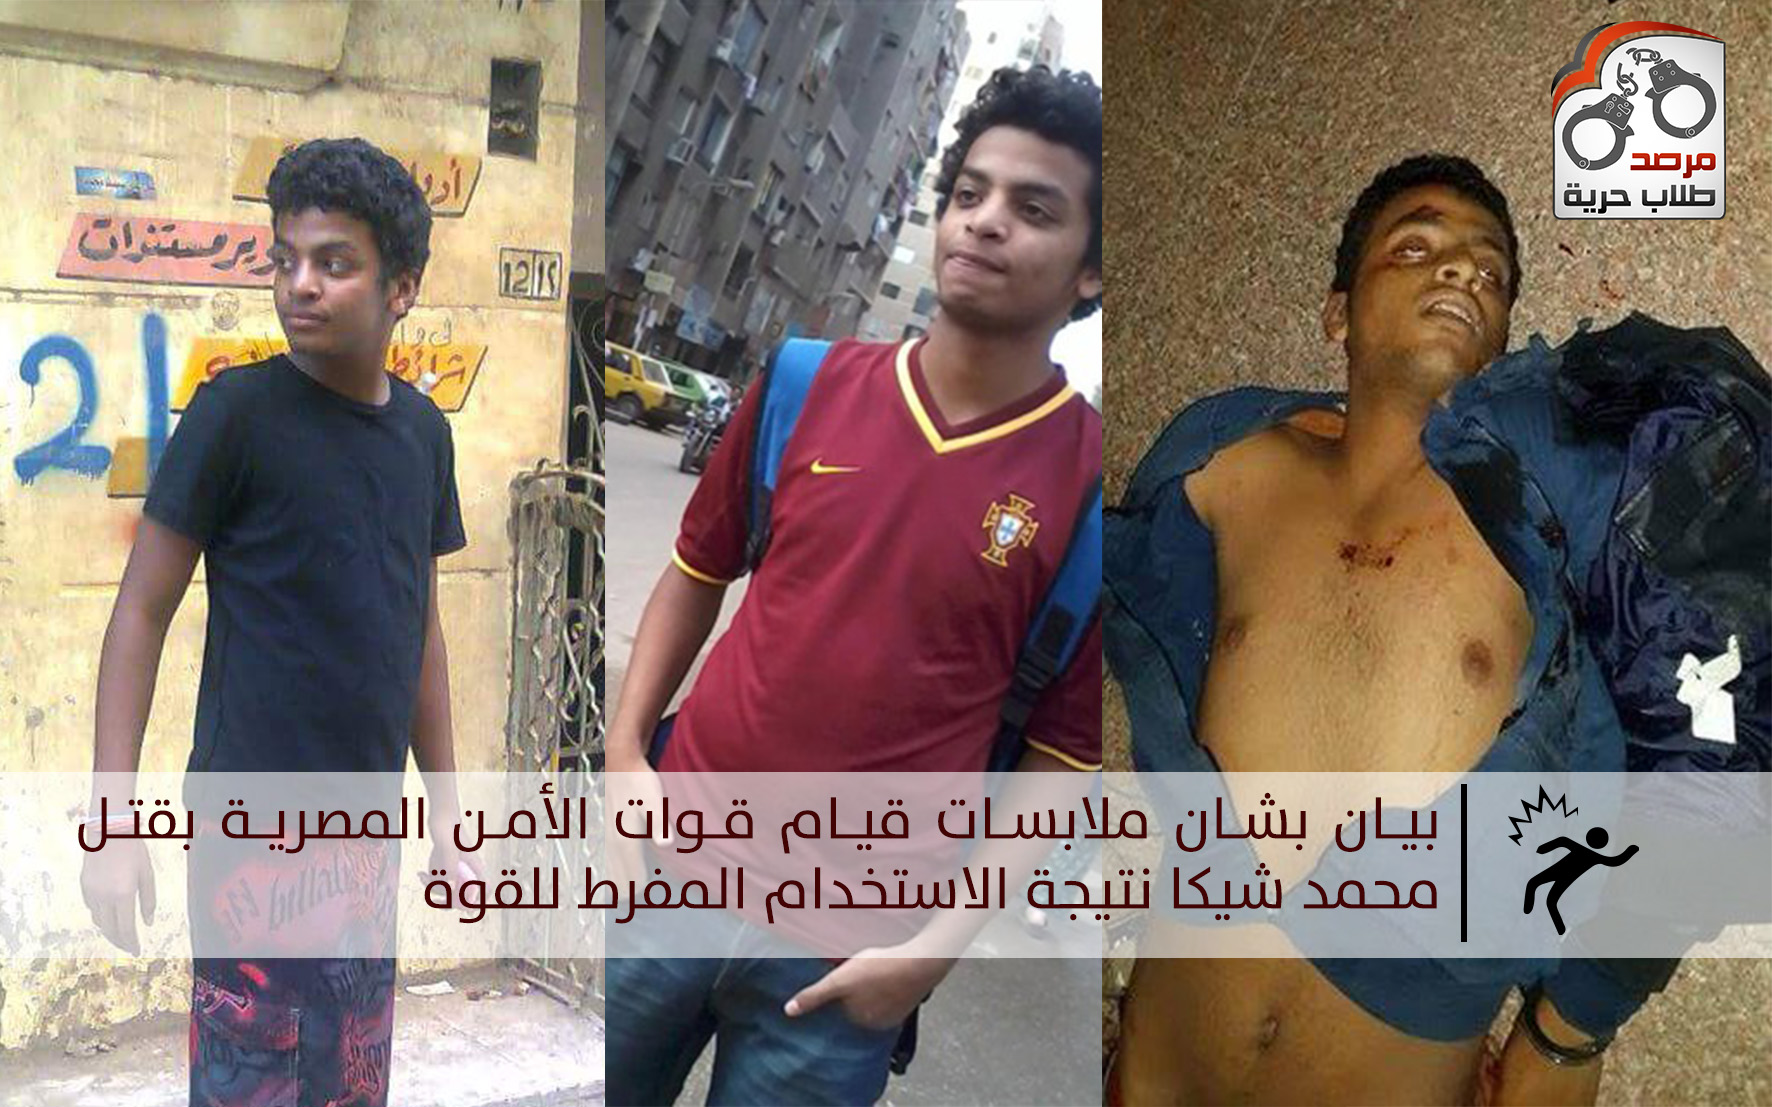 بيان بشان ملابسات قيام قوات الأمن المصرية بقتل محمد شيكا نتيجة الاستخدام المفرط للقوة